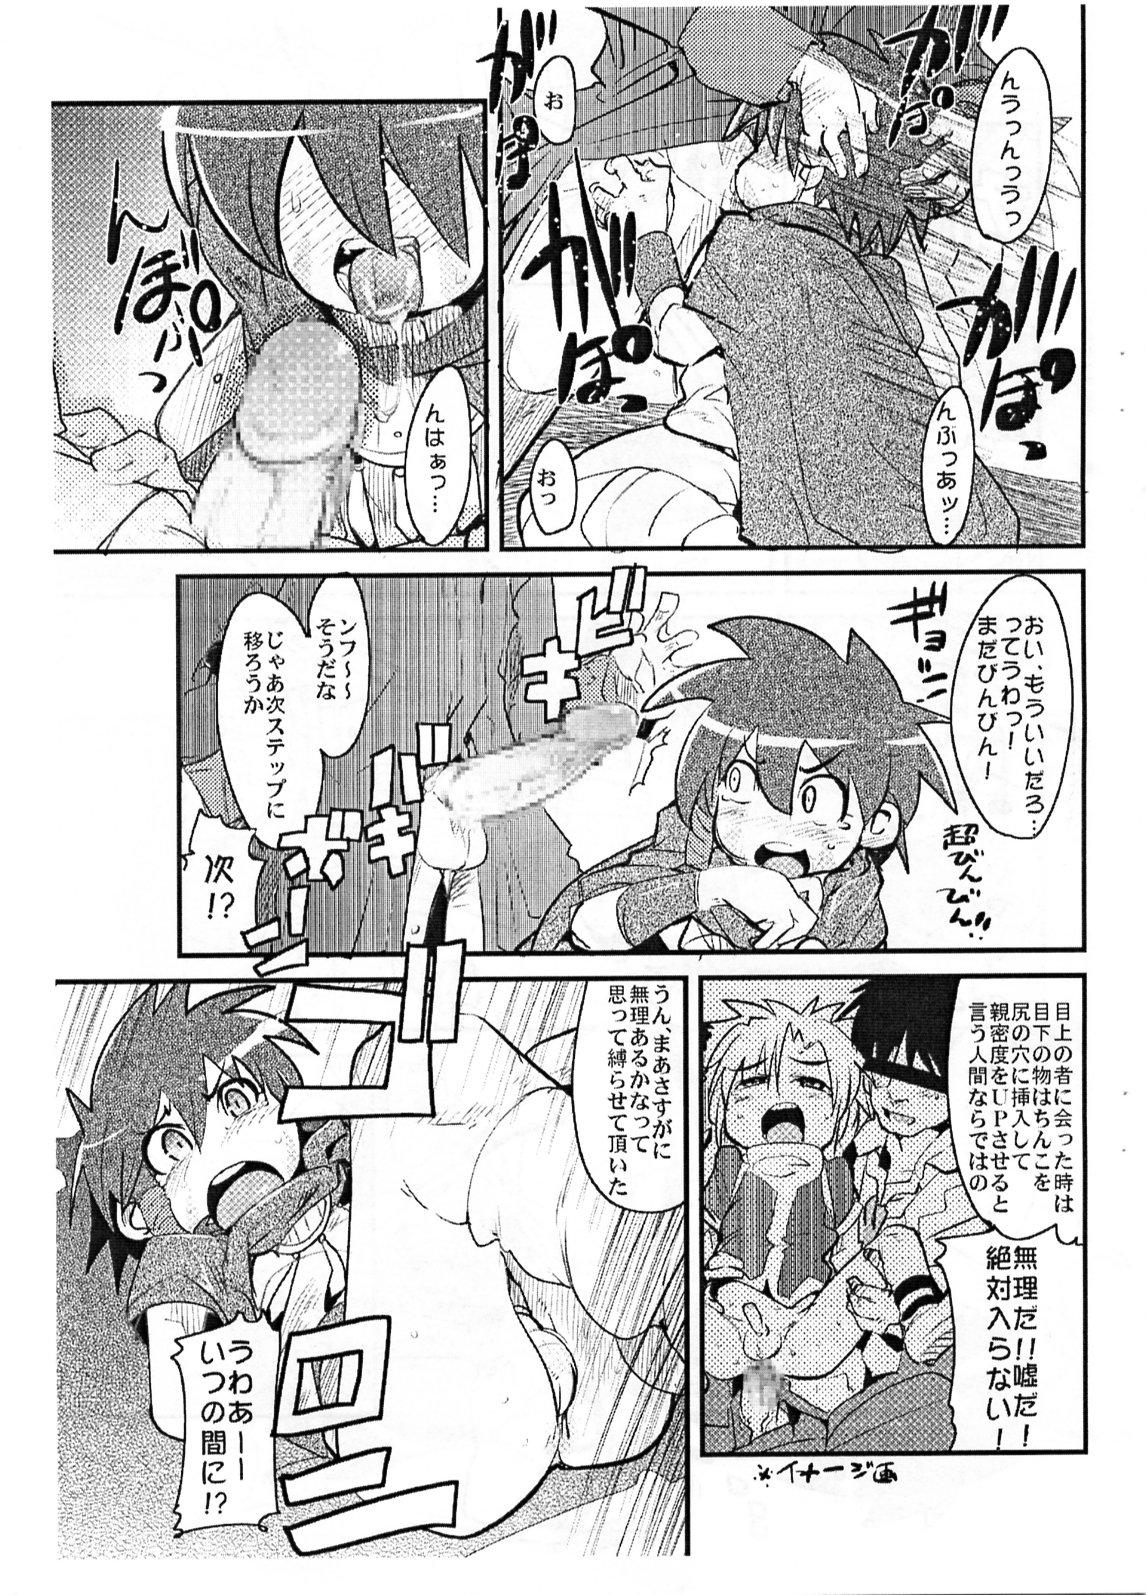 Taiwan Yaseiji ni iroiro oshieru hon nano da - Digimon savers Seduction Porn - Page 6